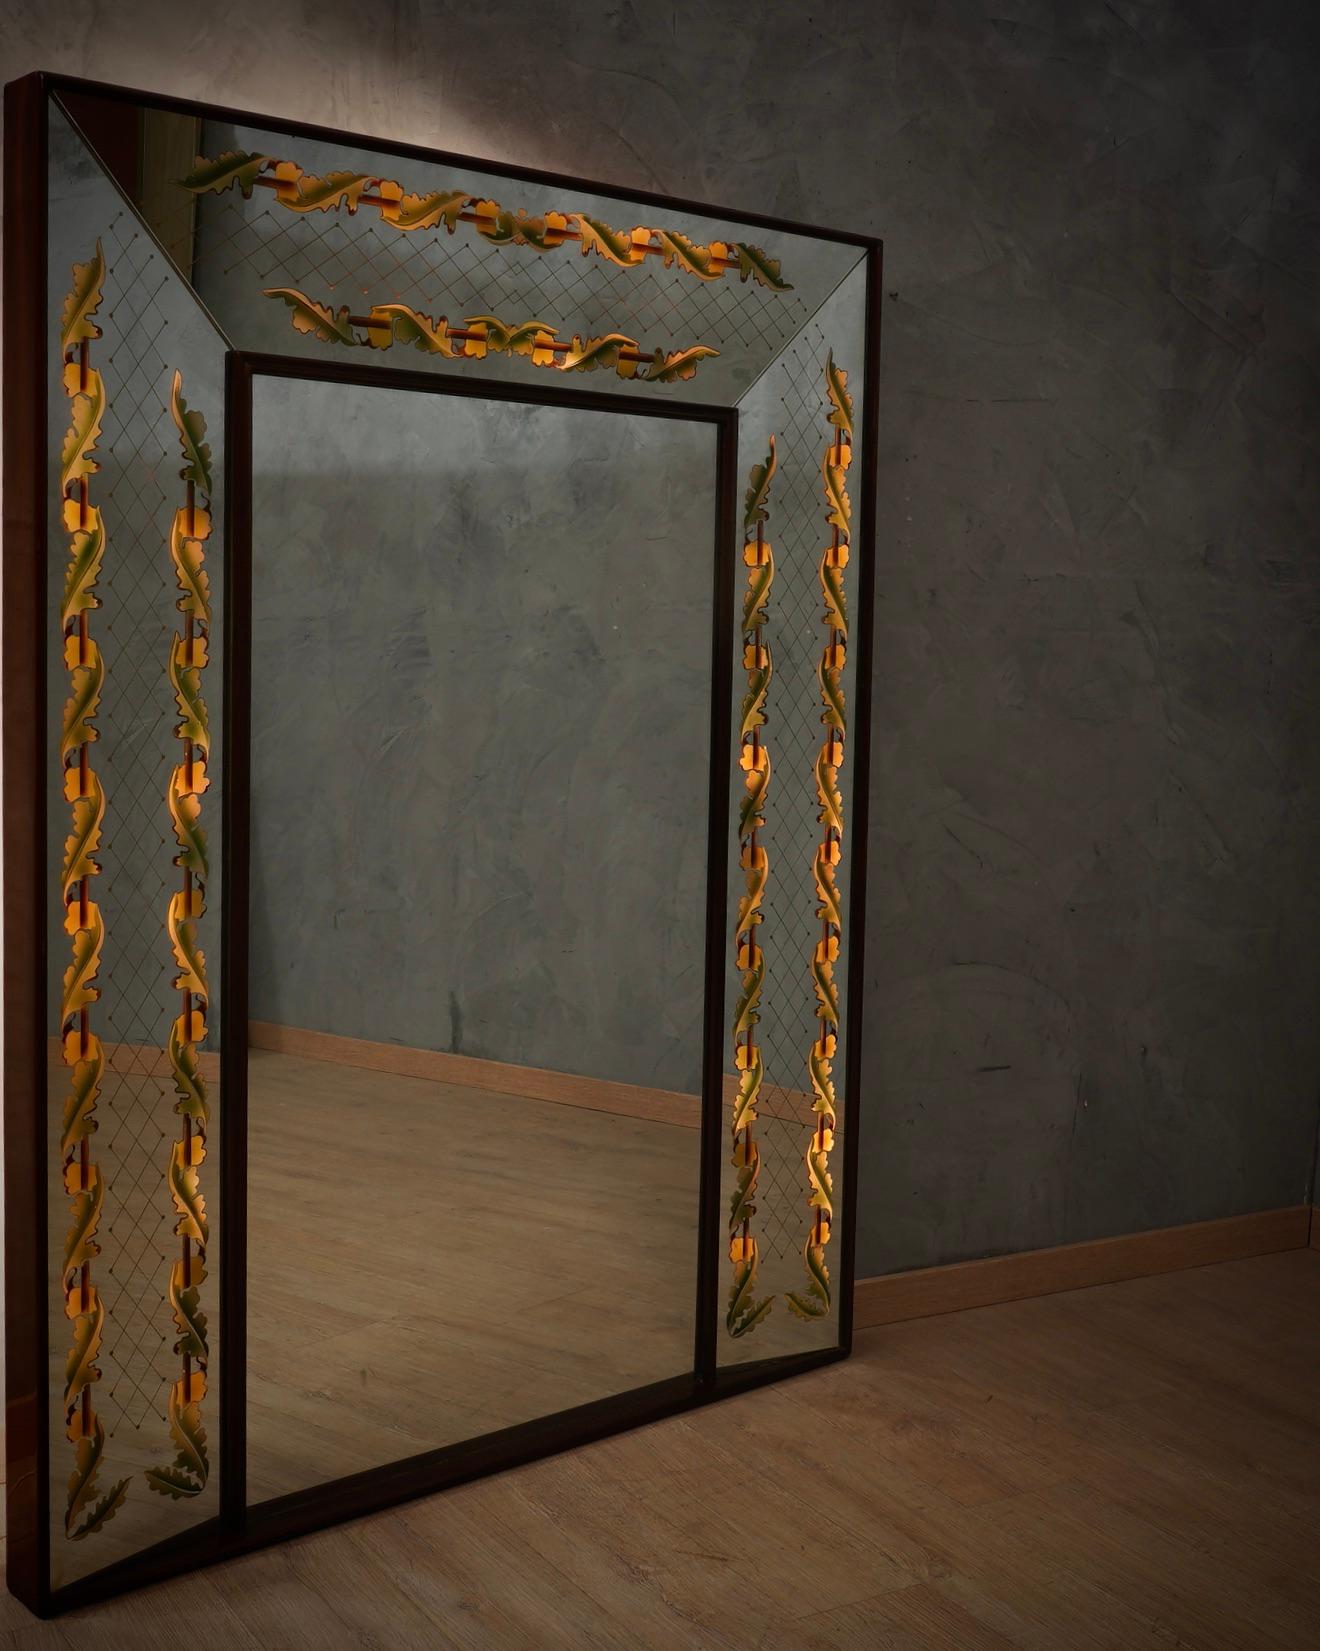 Sehr eleganter Spiegel von Luigi Brusotti, originelles und einzigartiges Design, mit interner Elektrifizierung.

Der Spiegel hat eine hölzerne Struktur, und rund um den Umfang gibt es Walnussholz Leisten. Die Vorderseite besteht aus verspiegeltem